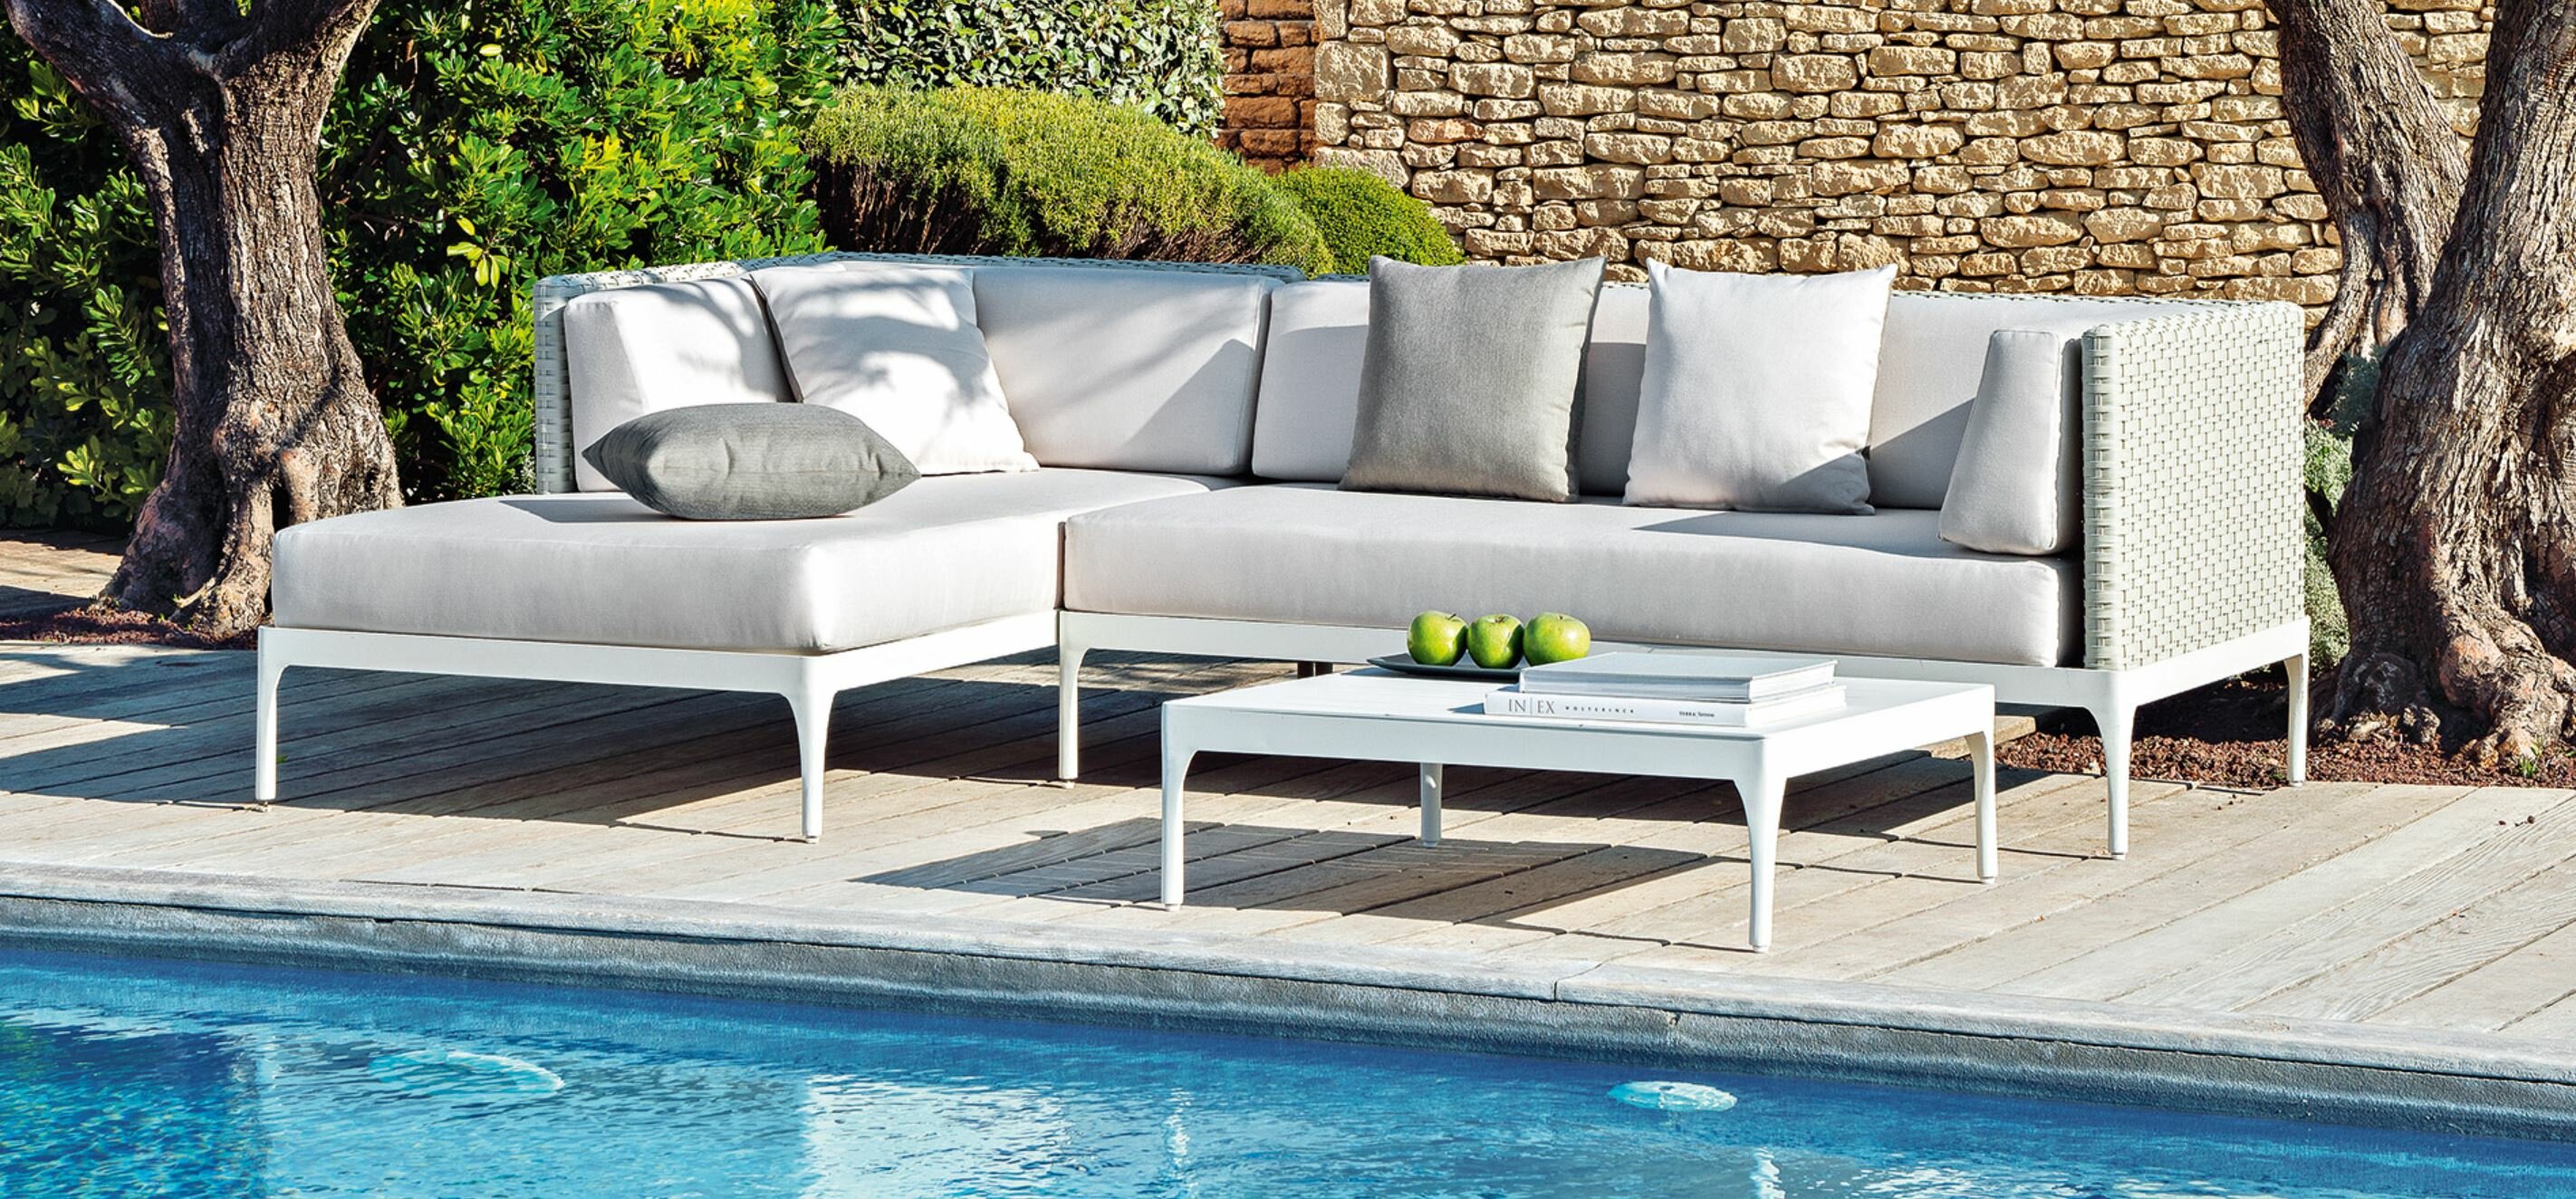 Luxus Poolmöbel für den Garten und Terrasse 